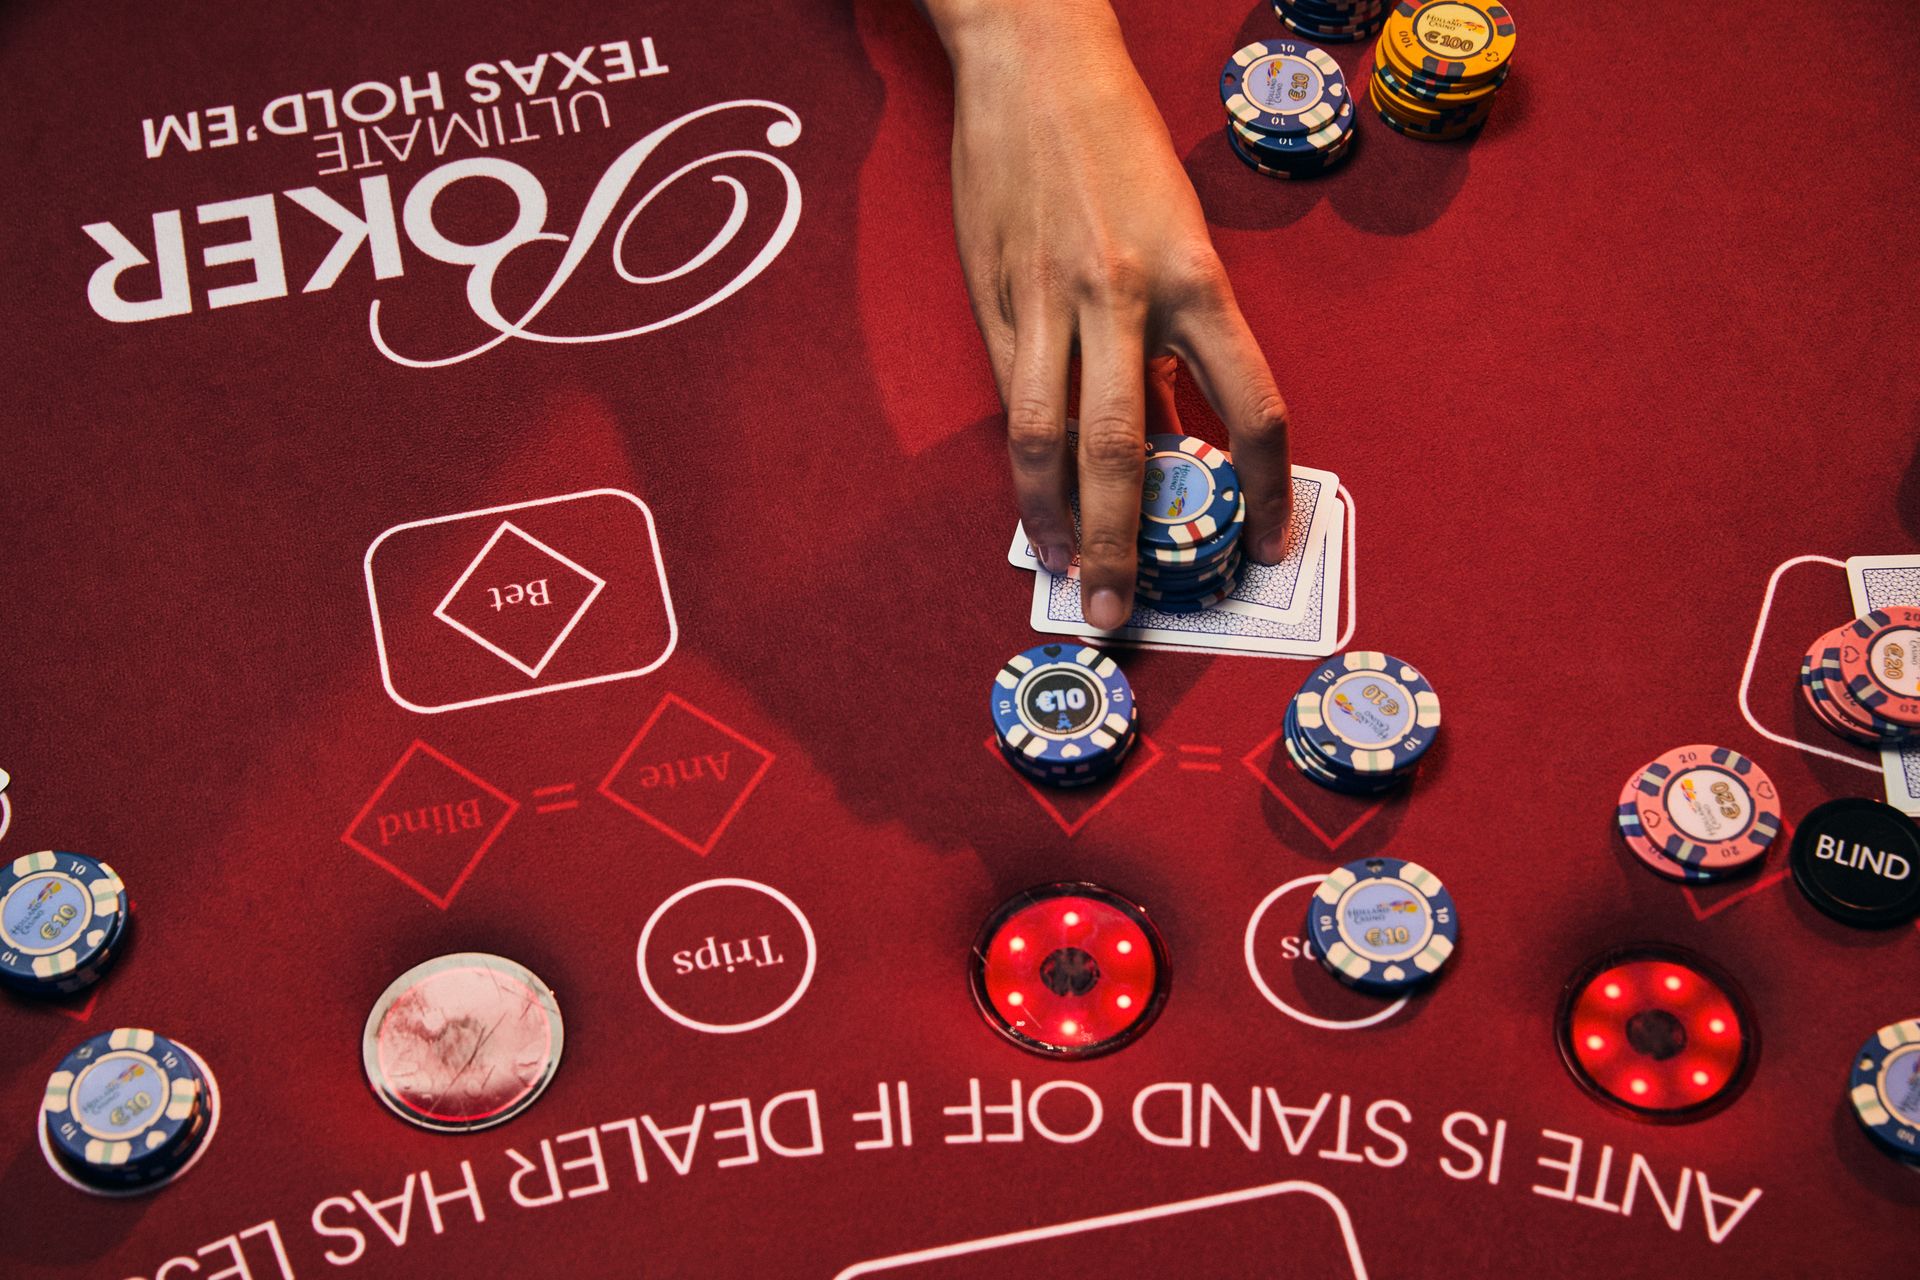 holland-casino-poker-ultimate-texas-hold'em-poker-tafel-met-vrouwelijke-hand-die-waarde-fiches-inzet-op-stapel-kaarten-legt